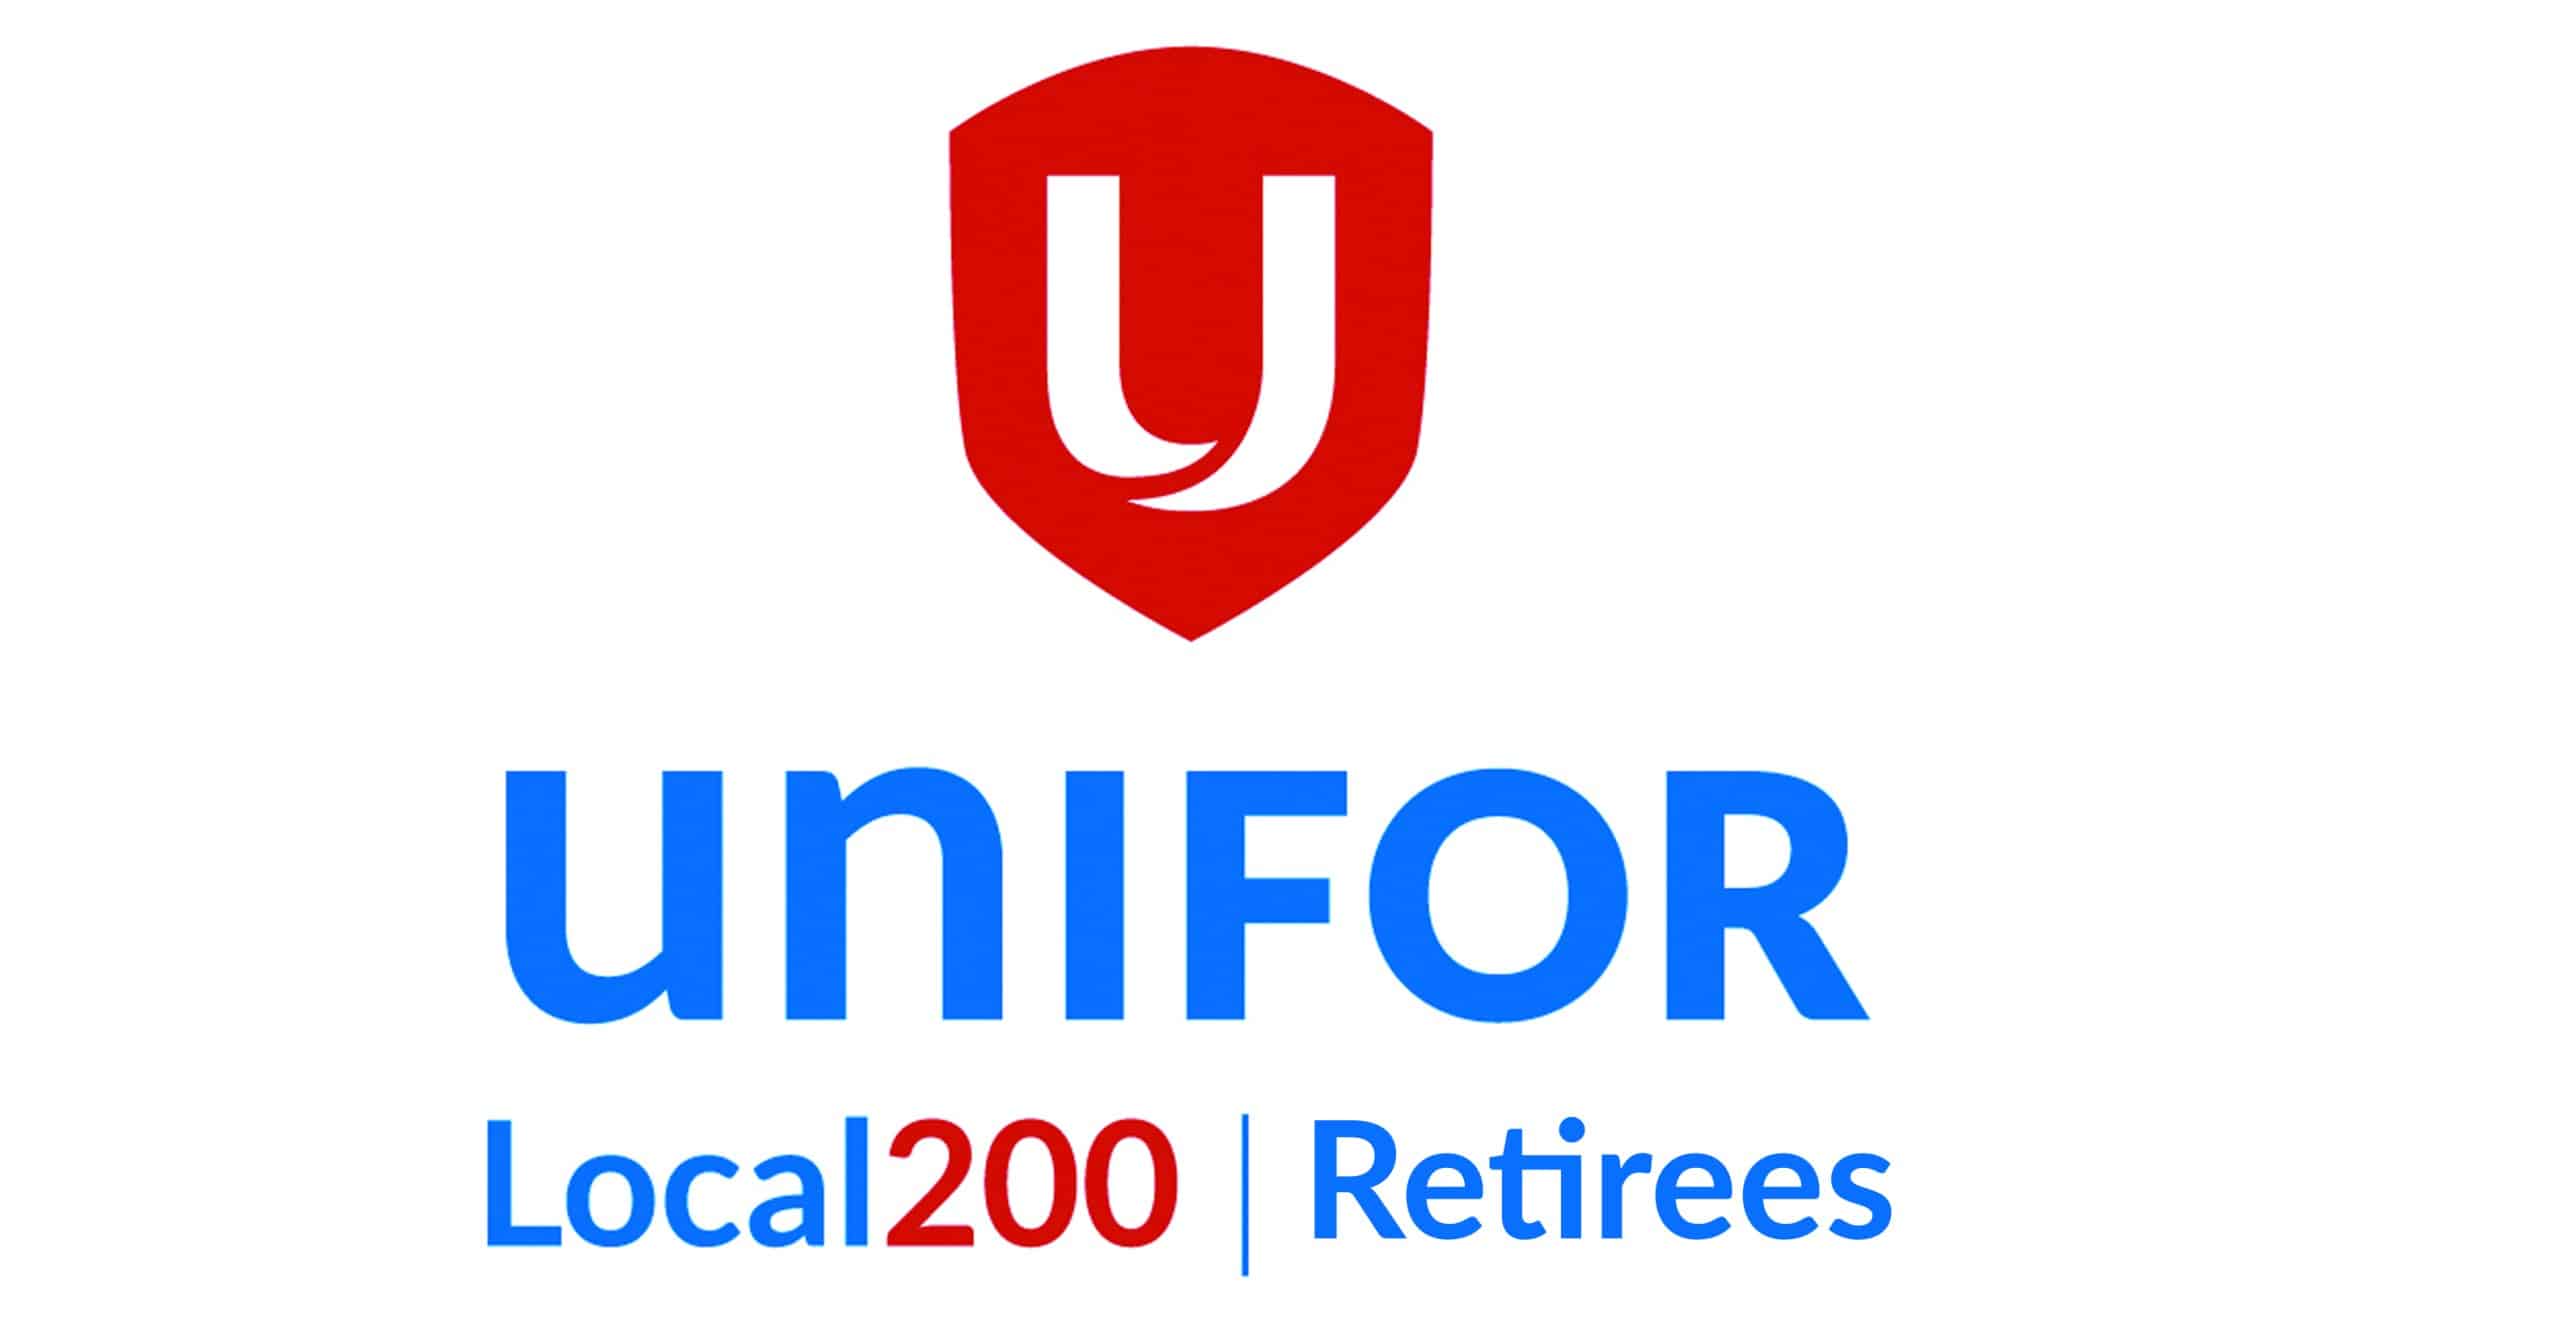 Unifor Local 200 Retirees